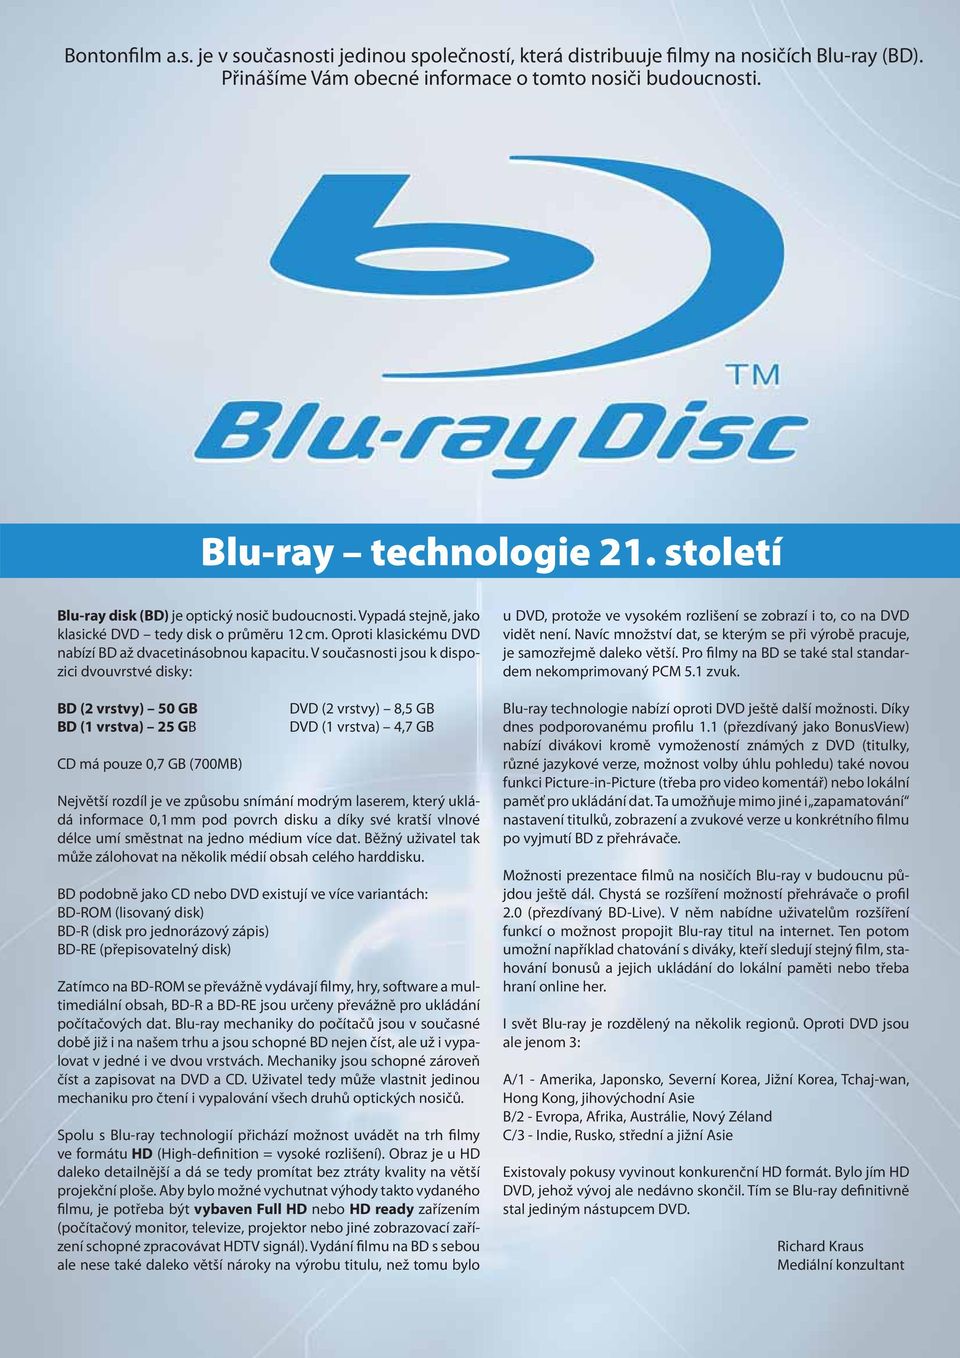 V současnosti jsou k dispozici dvouvrstvé disky: BD (2 vrstvy) 50 GB BD (1 vrstva) 25 GB CD má pouze 0,7 GB (700MB) DVD (2 vrstvy) 8,5 GB DVD (1 vrstva) 4,7 GB Největší rozdíl je ve způsobu snímání